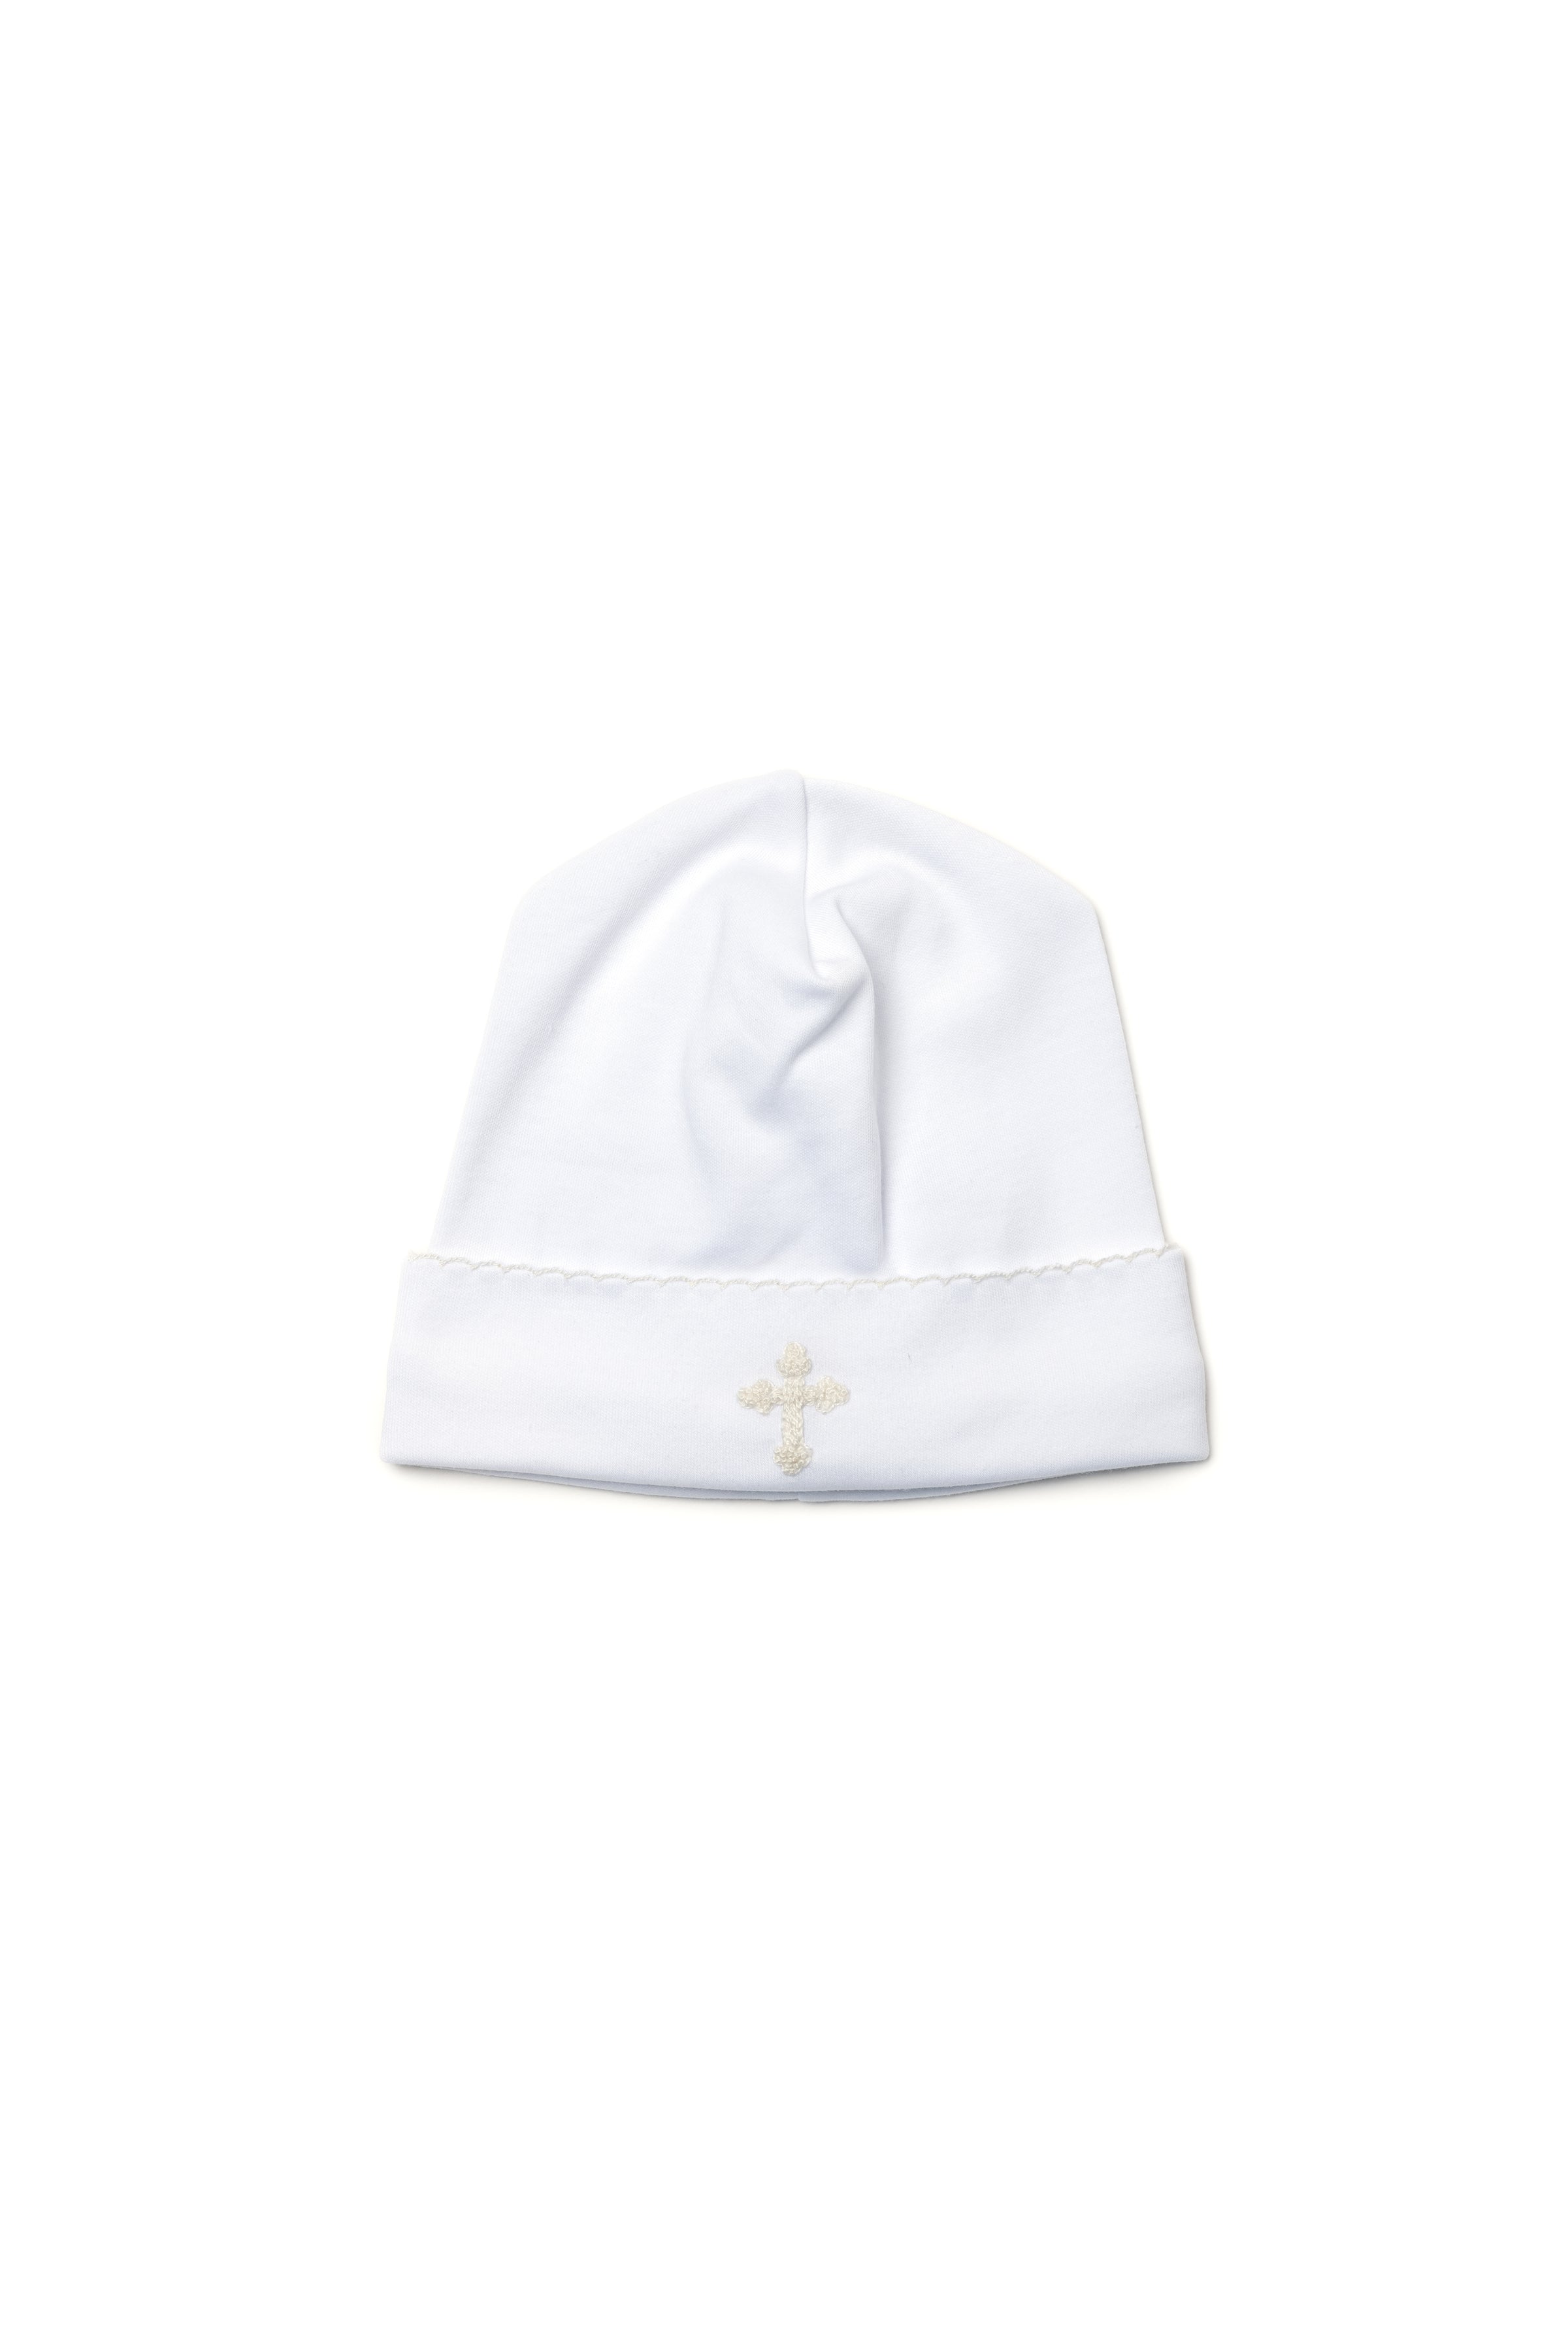 Unisex Baby Cross Hat